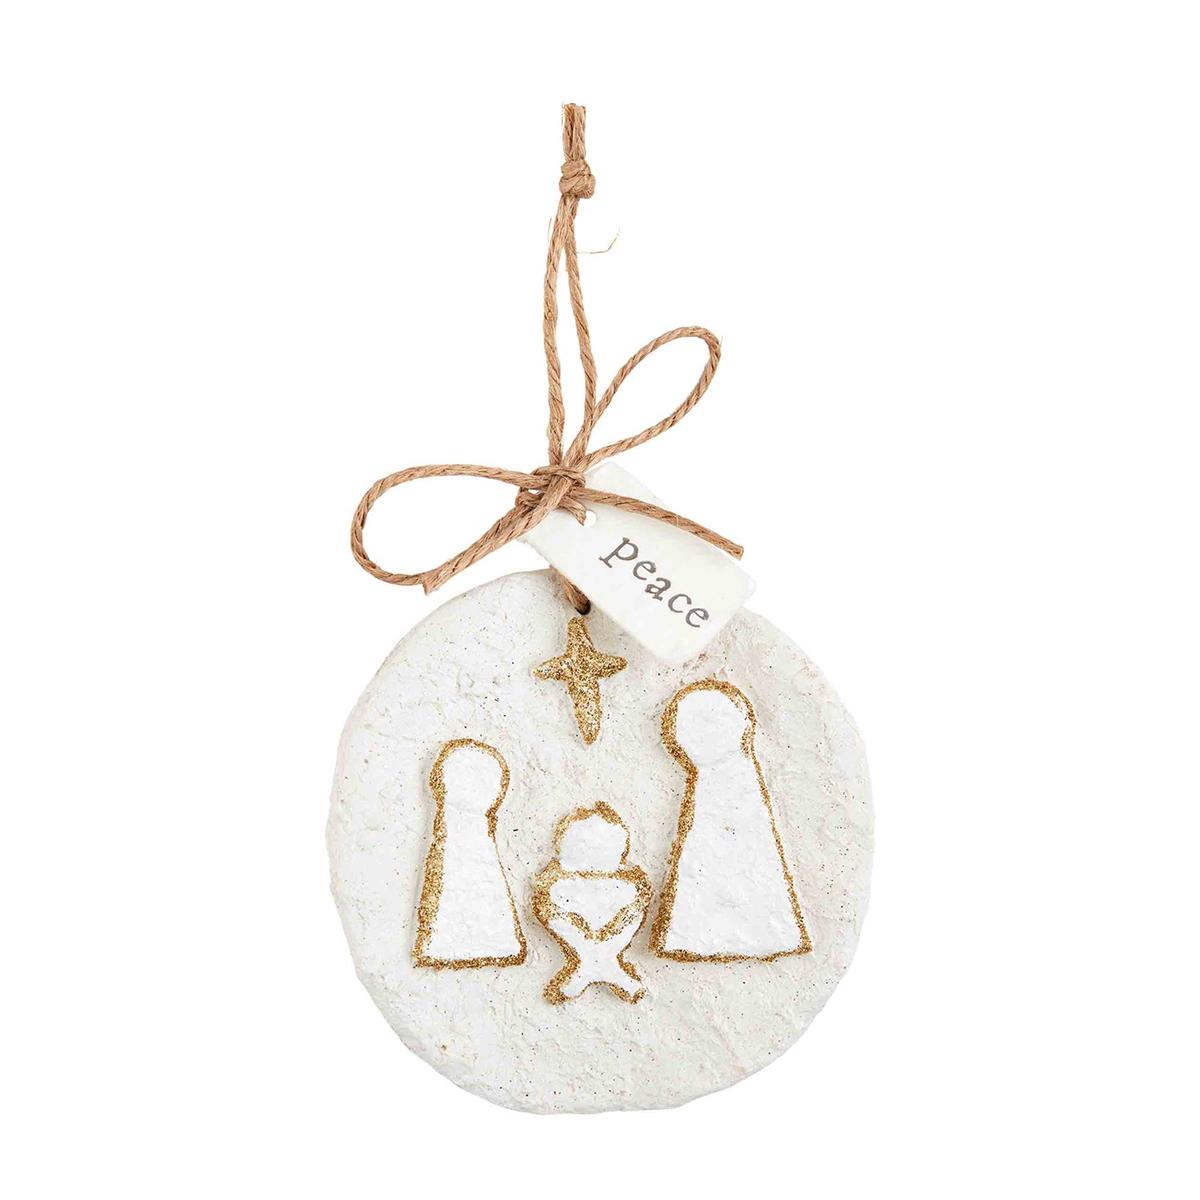 Papier-mâché Ornament with Nativity Design